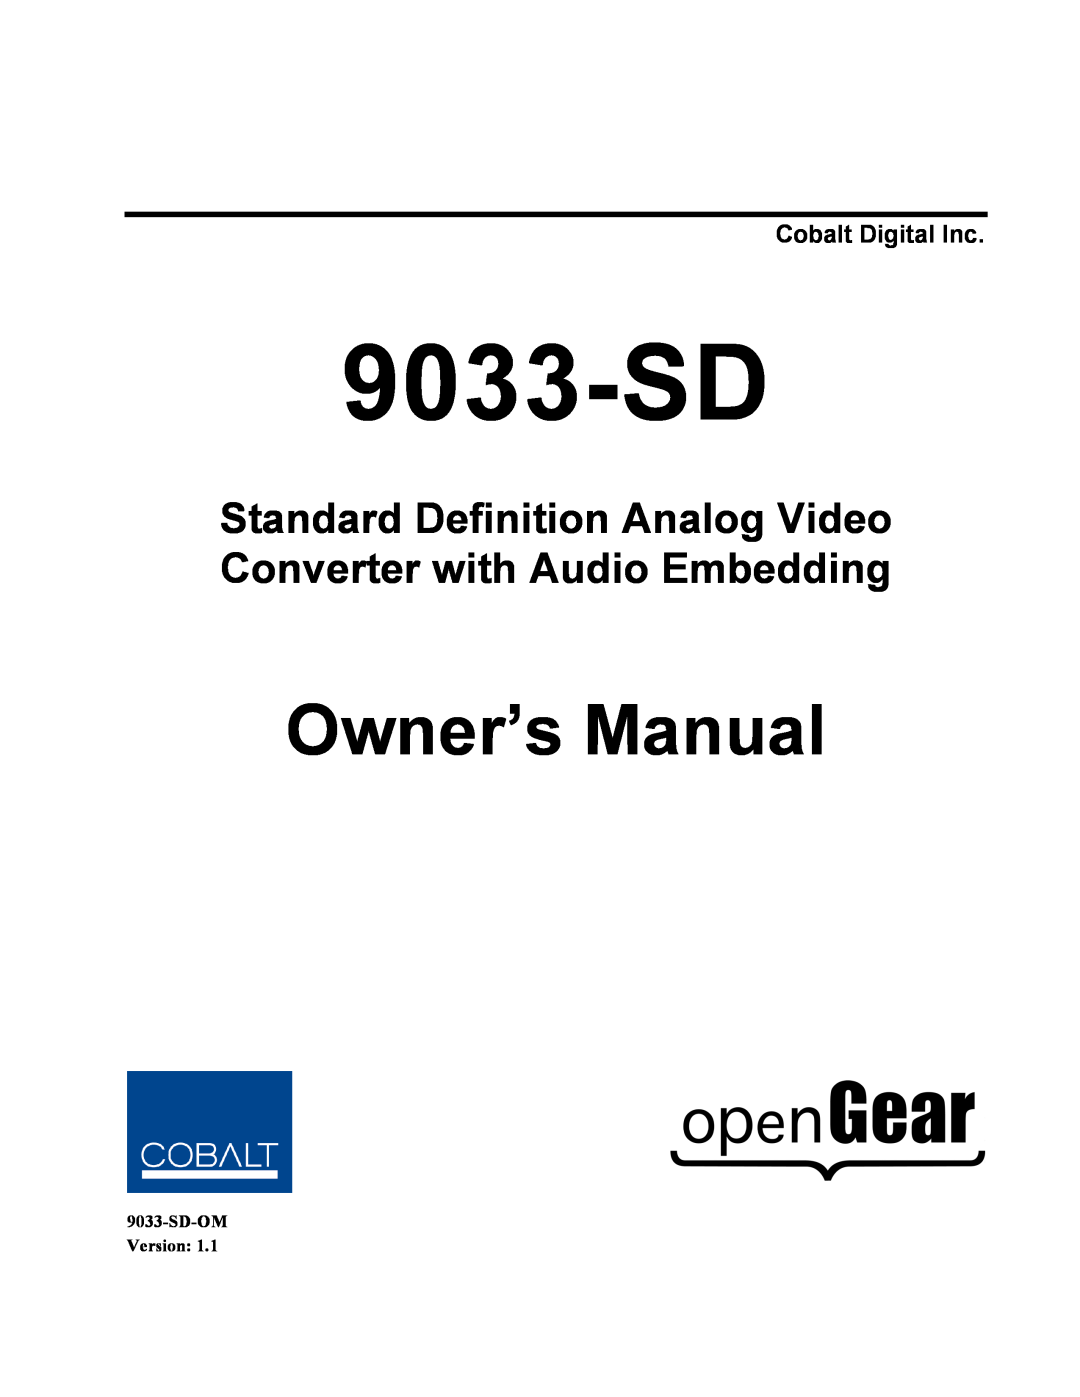 Cobalt Networks 9033-SD owner manual Cobalt Digital Inc, Owner’s Manual, SD-OM Version 